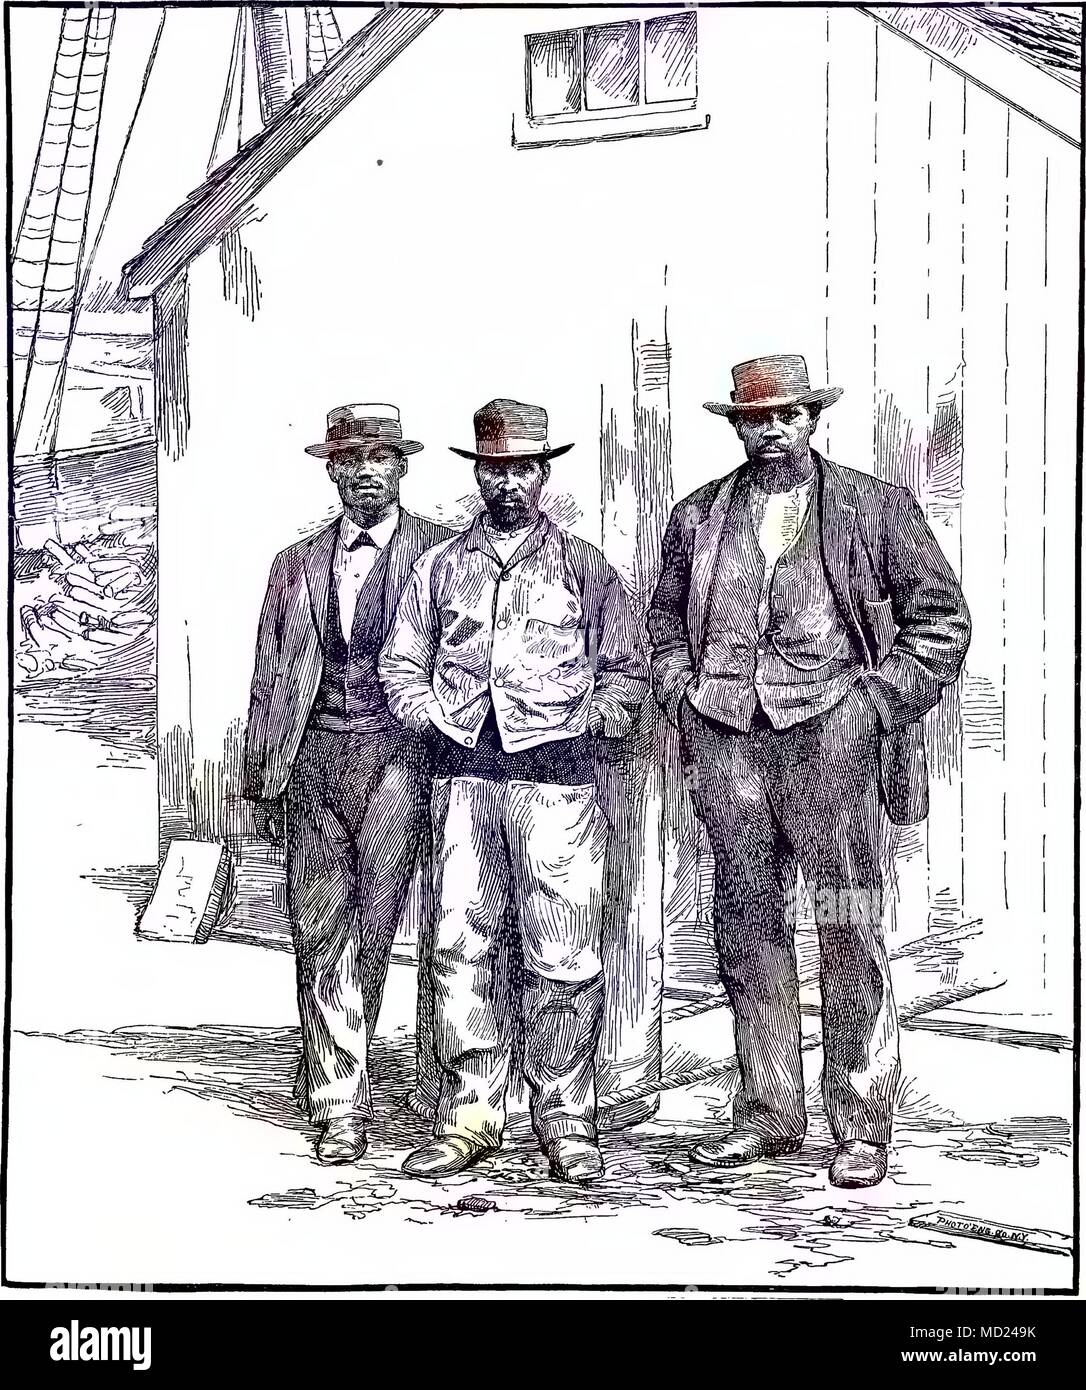 Ätzen von drei Kapverdische Männer stehen auf einem Wharf, New Bedford, Massachusetts, 1880. Mit freundlicher Genehmigung Internet Archive. Hinweis: Das Bild hat digital über ein modernes Prozess eingefärbt worden. Farben möglicherweise nicht sein - genau. () Stockfoto